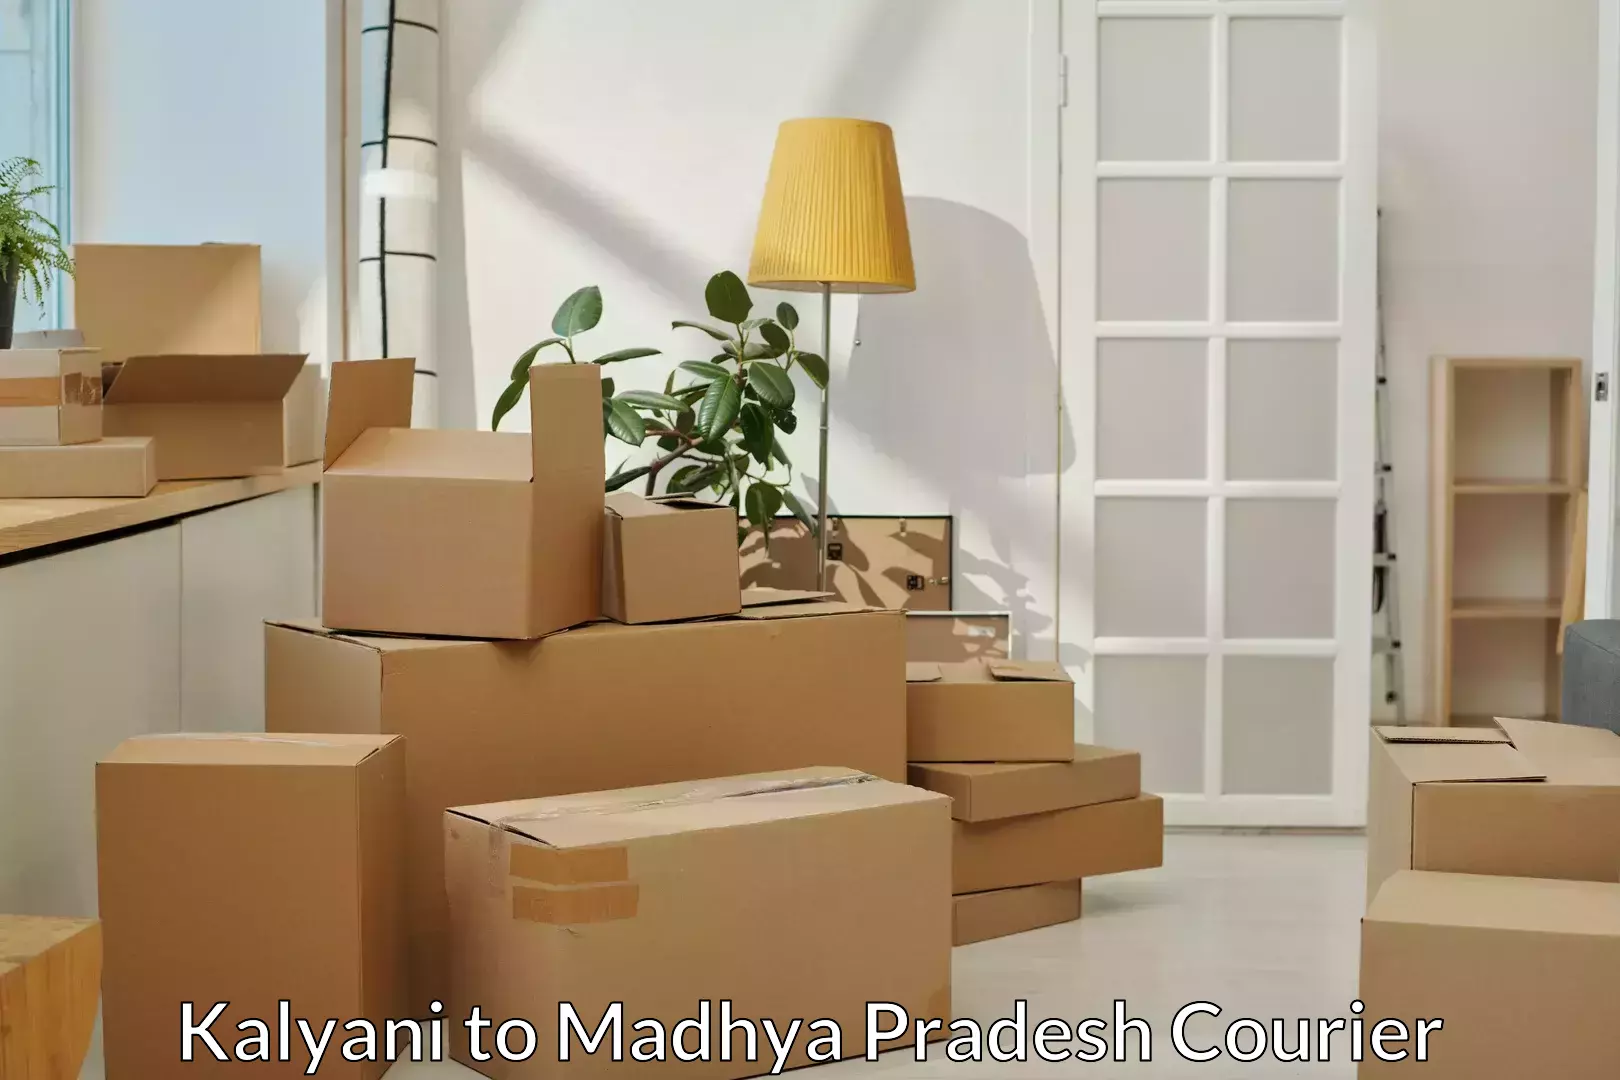 Skilled furniture movers Kalyani to Niwari